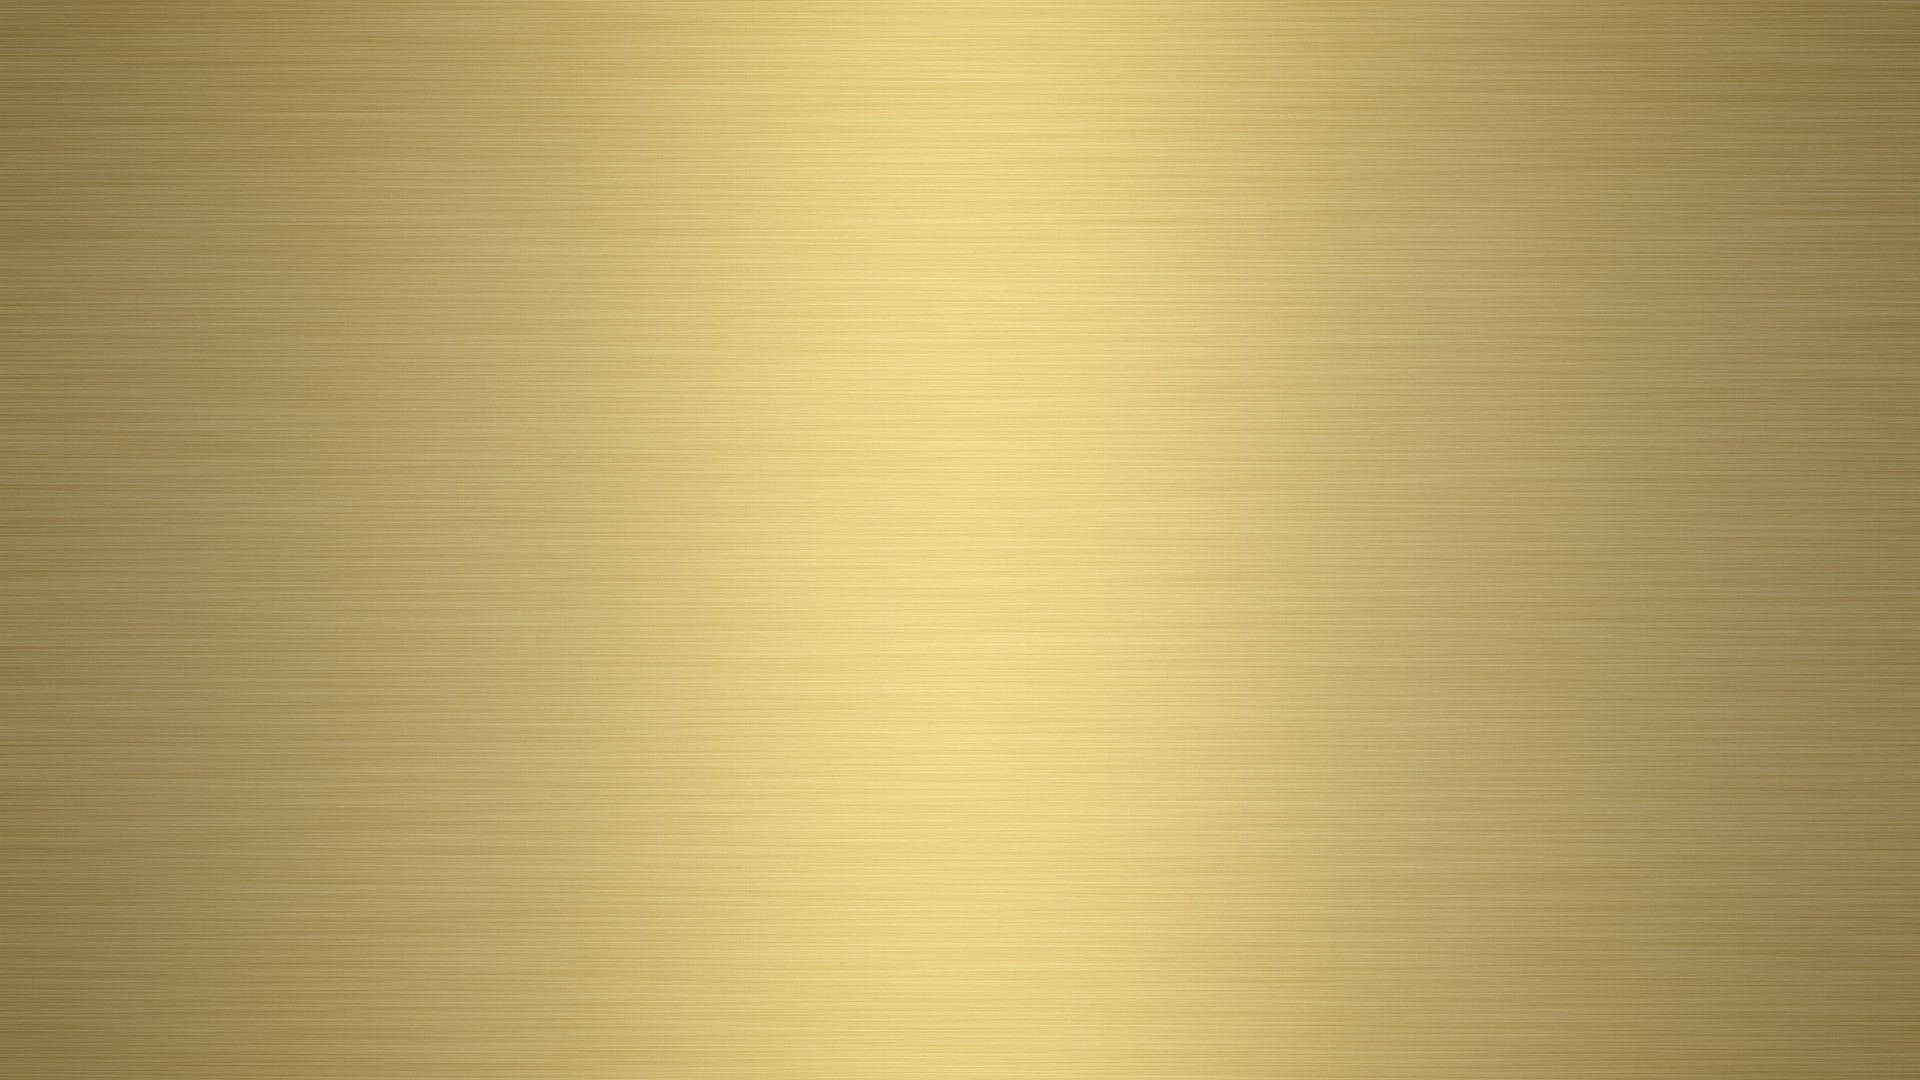 Plain Matte Gold Foil Background